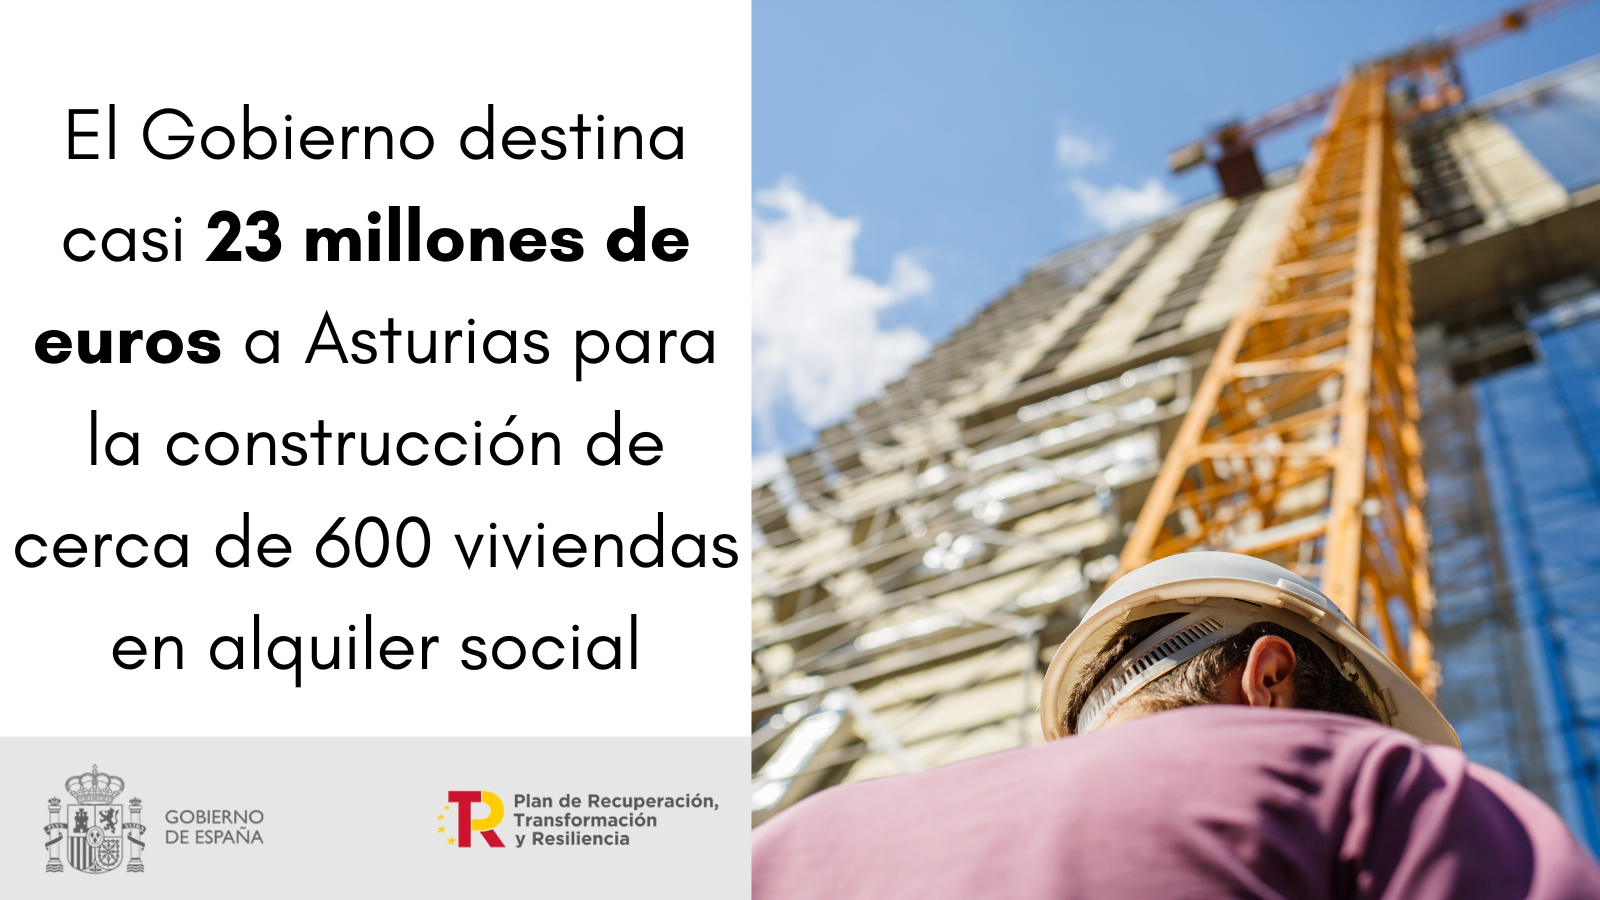 El Gobierno destina casi 23 millones de euros a Asturias para la construcción de cerca de 600 viviendas en alquiler social